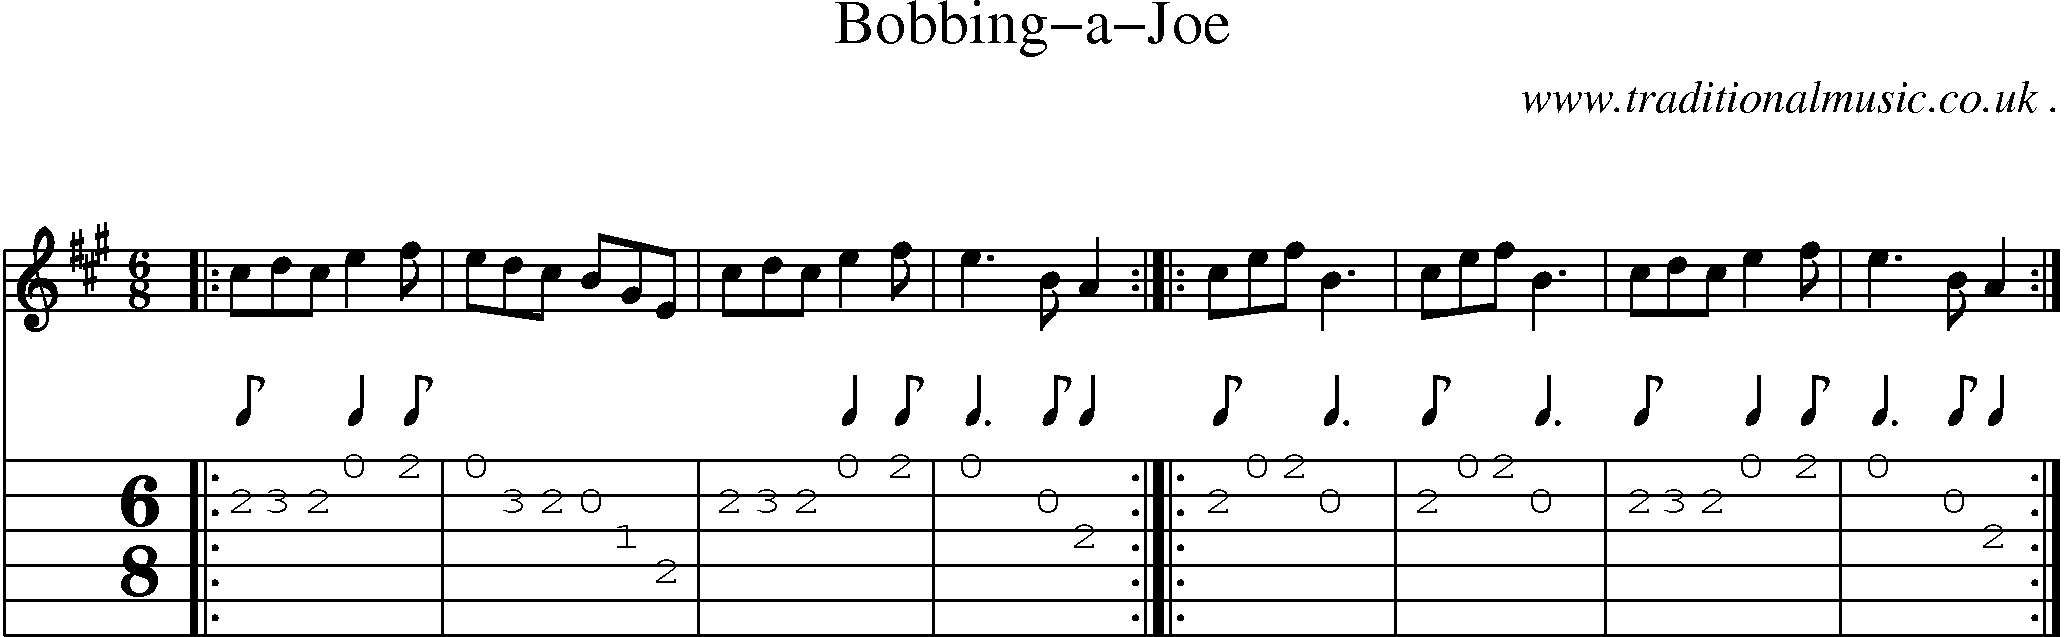 Sheet-Music and Guitar Tabs for Bobbing-a-joe